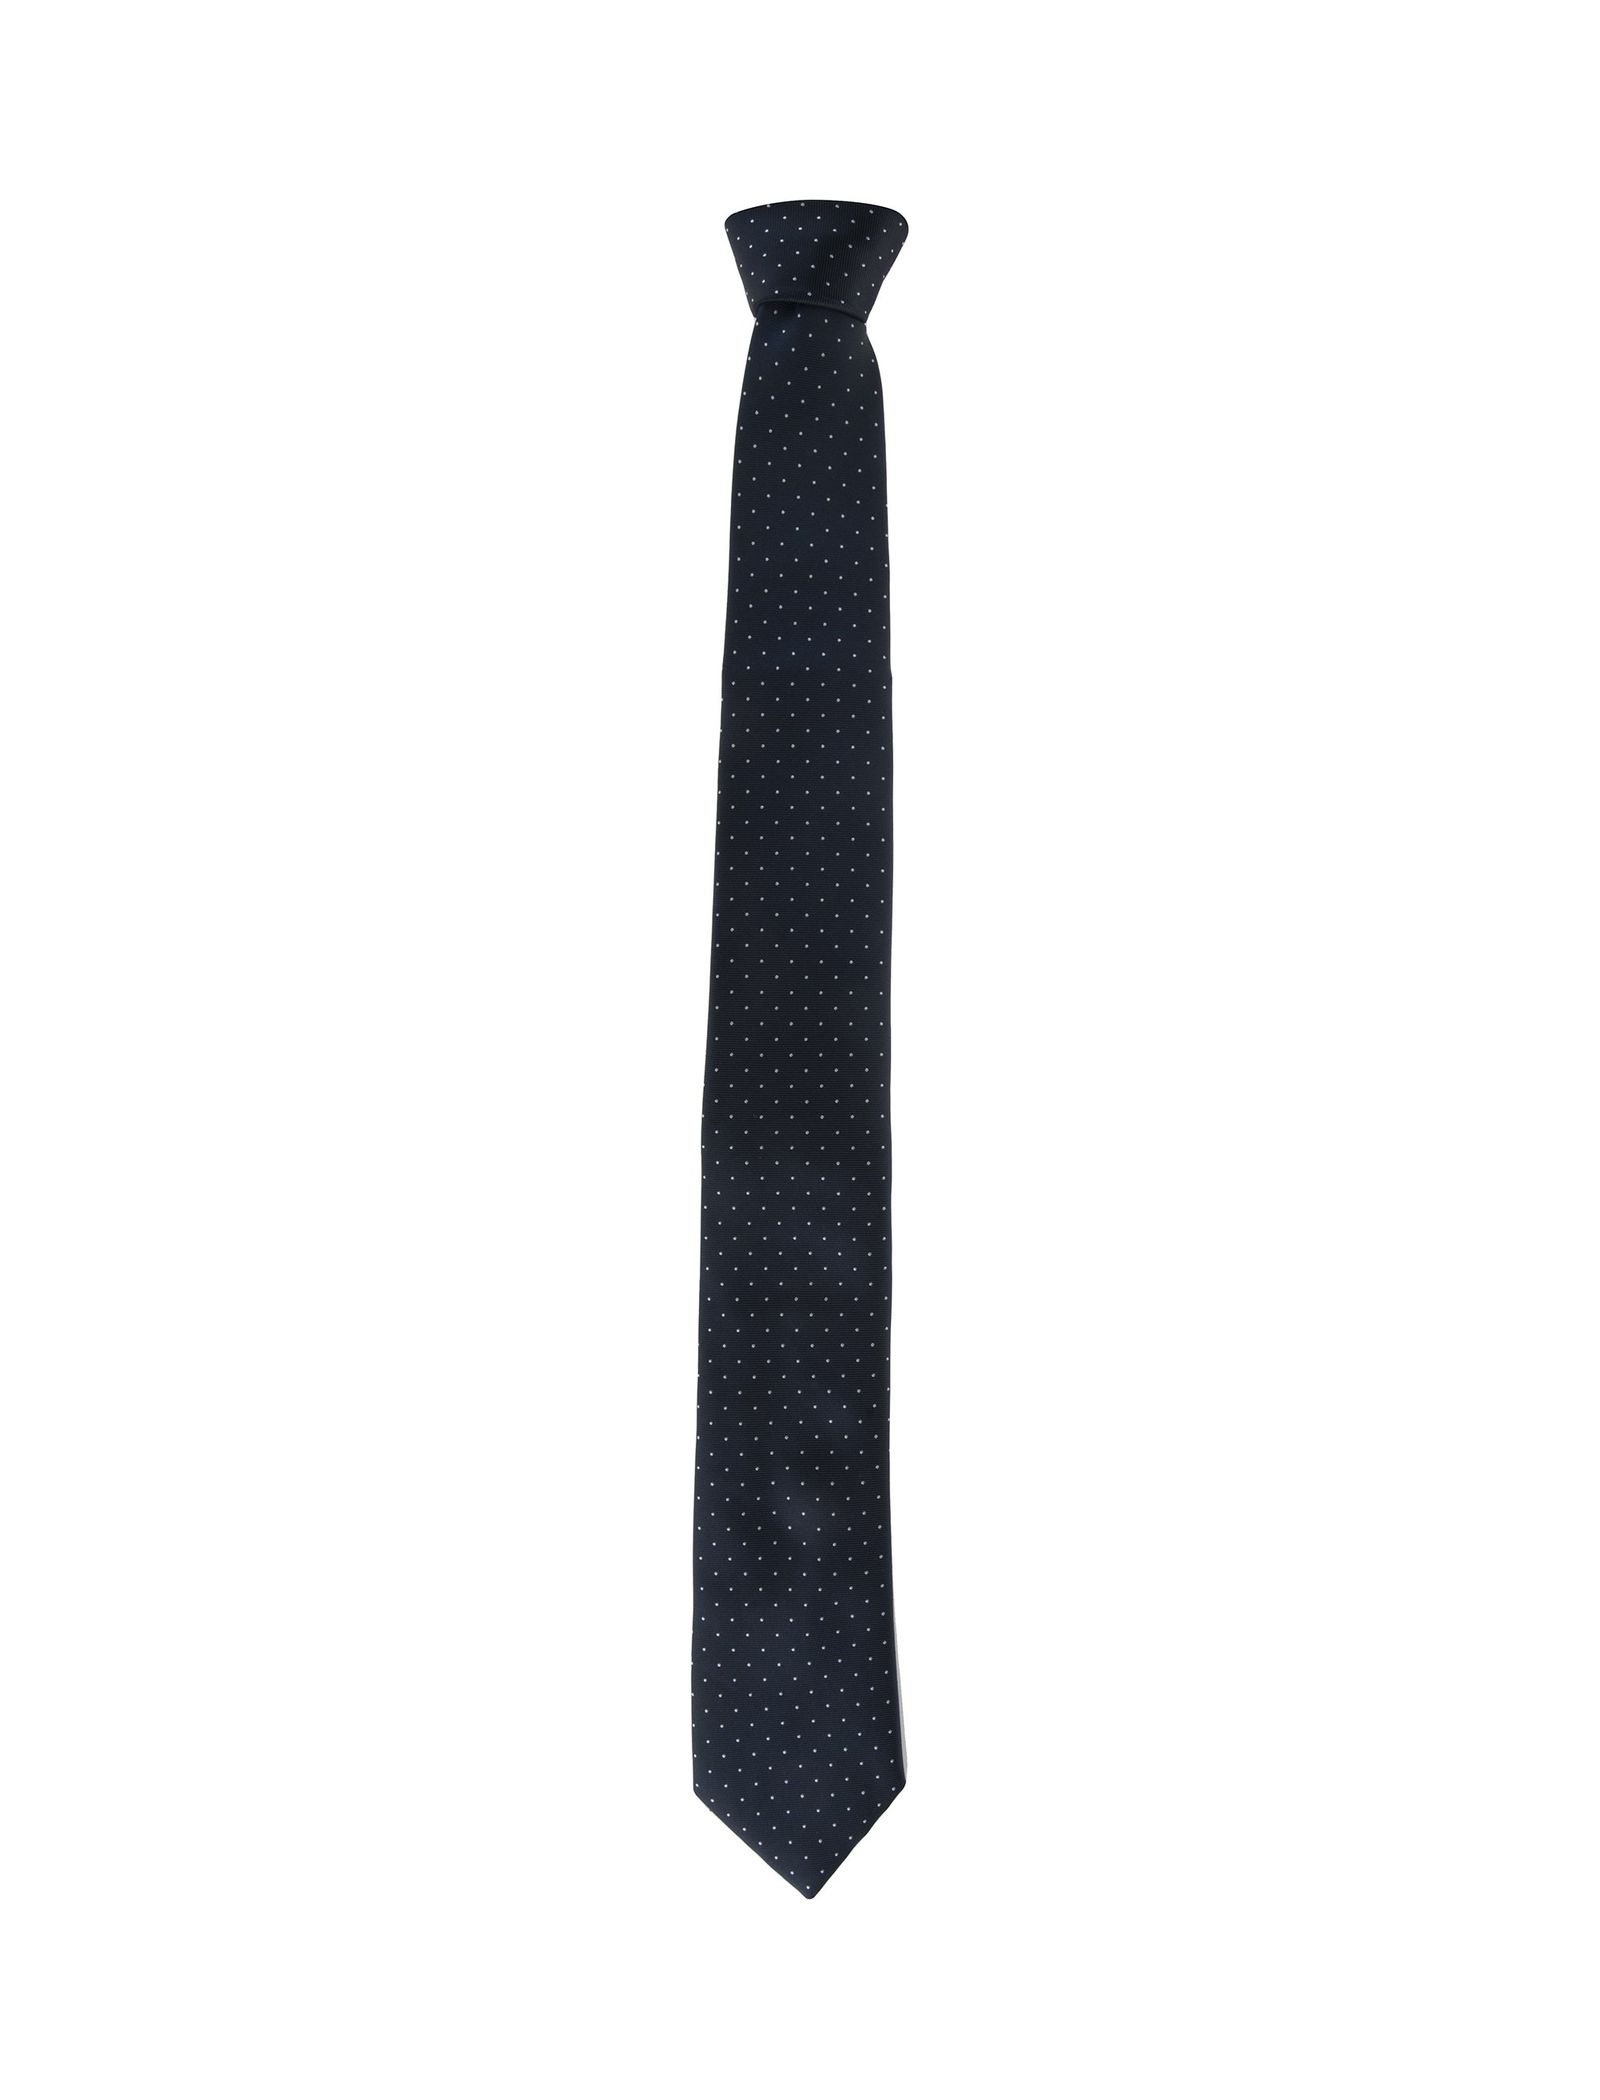 کراوات طرح دار مردانه - یوپیم تک سایز - سرمه اي - 2